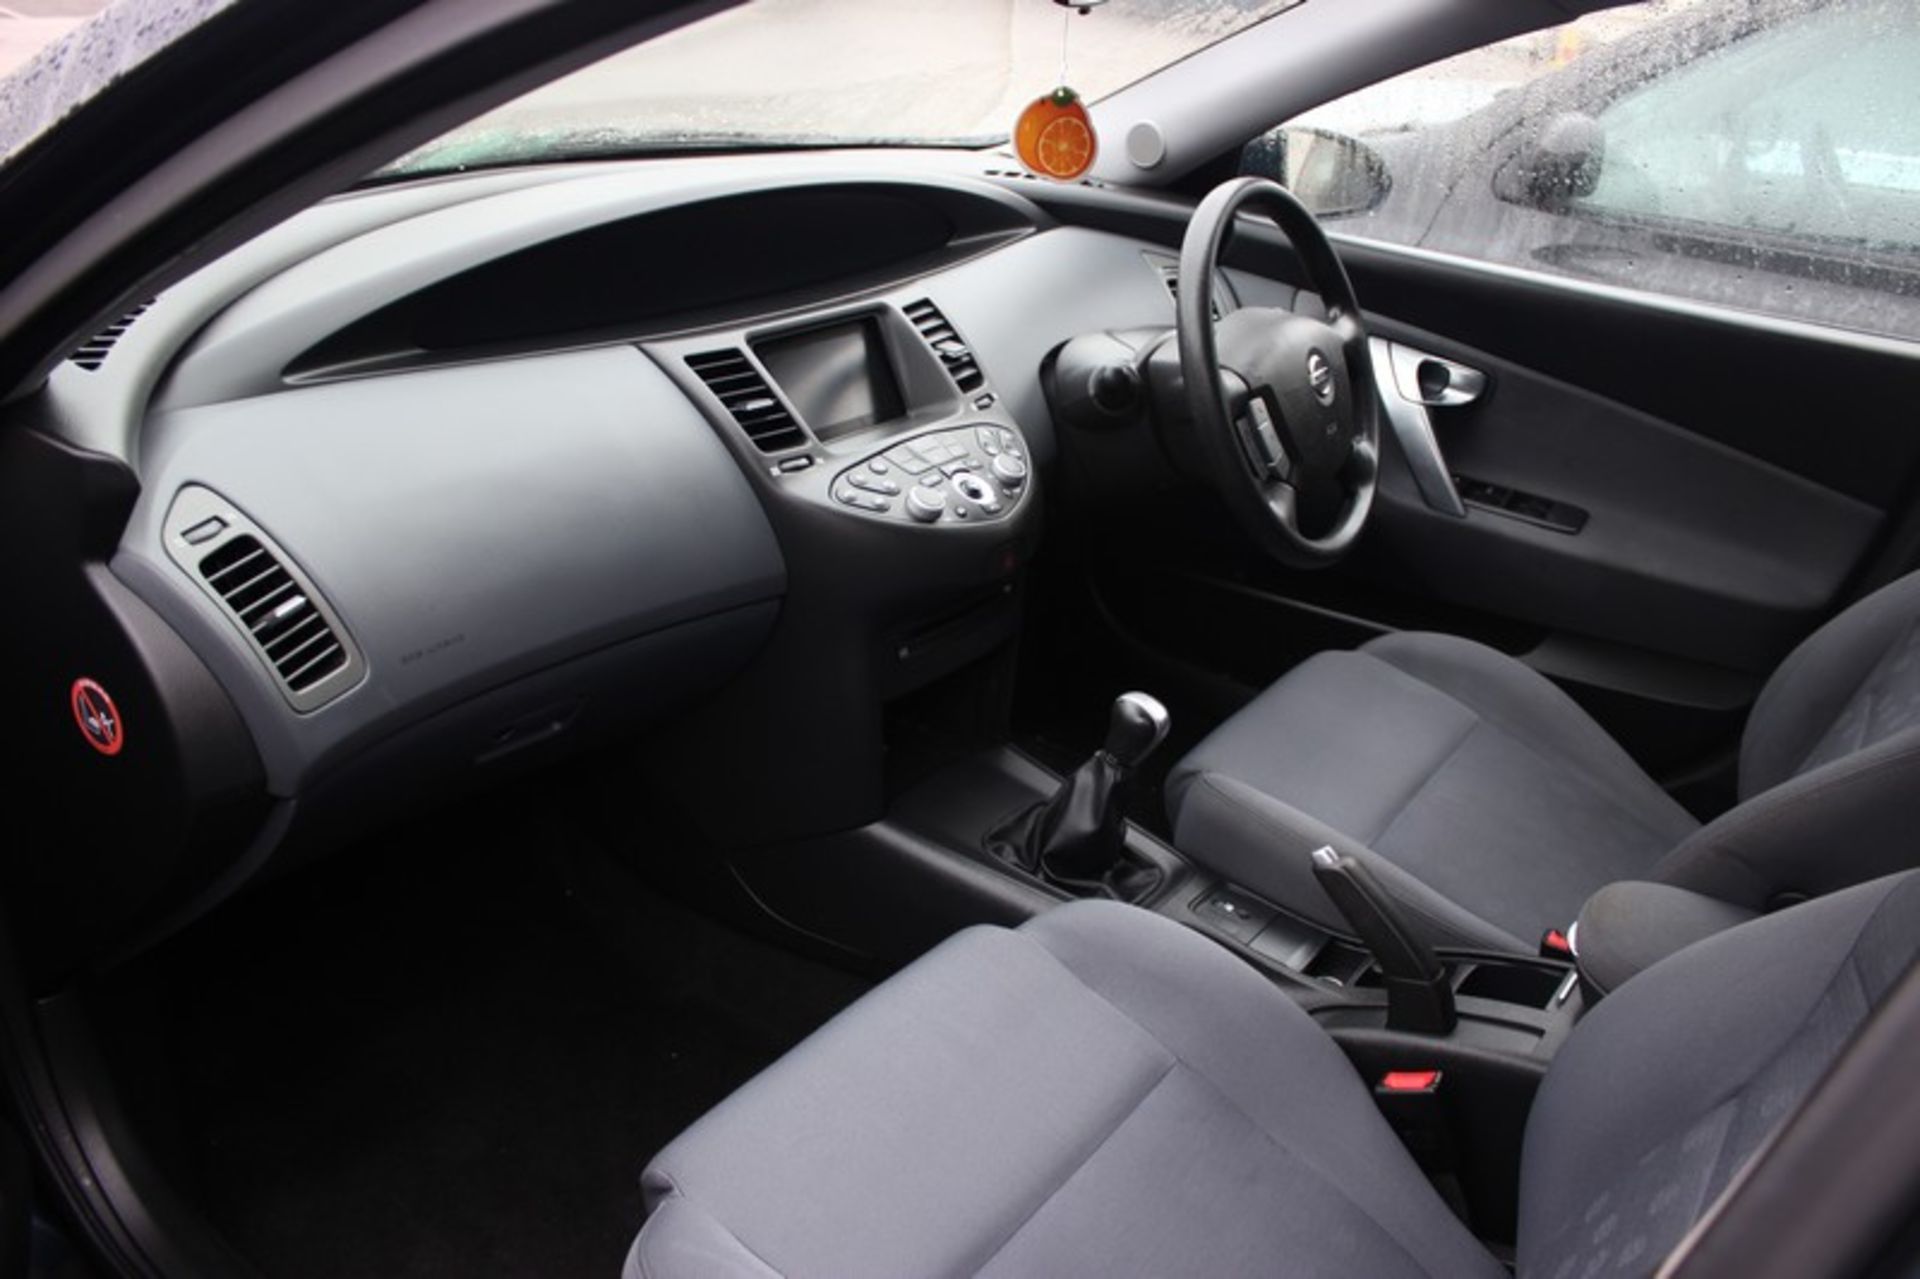 A 2005 Nissan Primera S five door hatchback, registration number OY55 AEK, 1769cc, petrol, manual, - Image 4 of 7